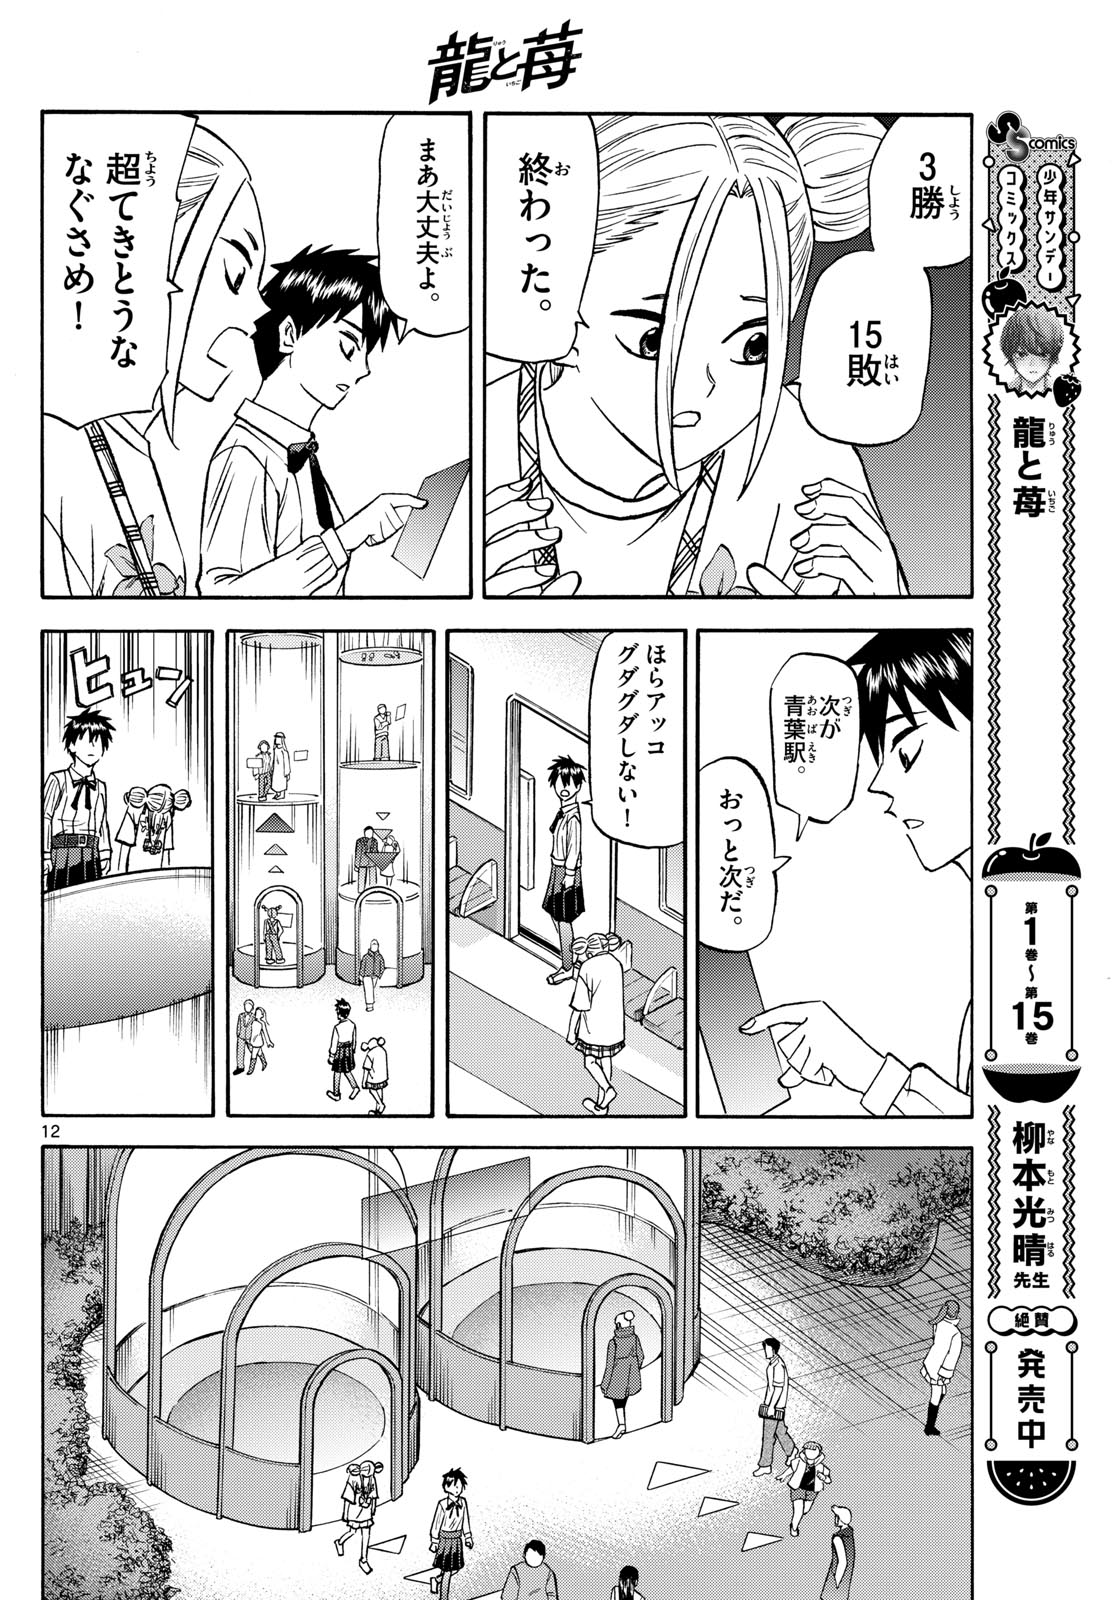 Tatsu to Ichigo - Chapter 190 - Page 12